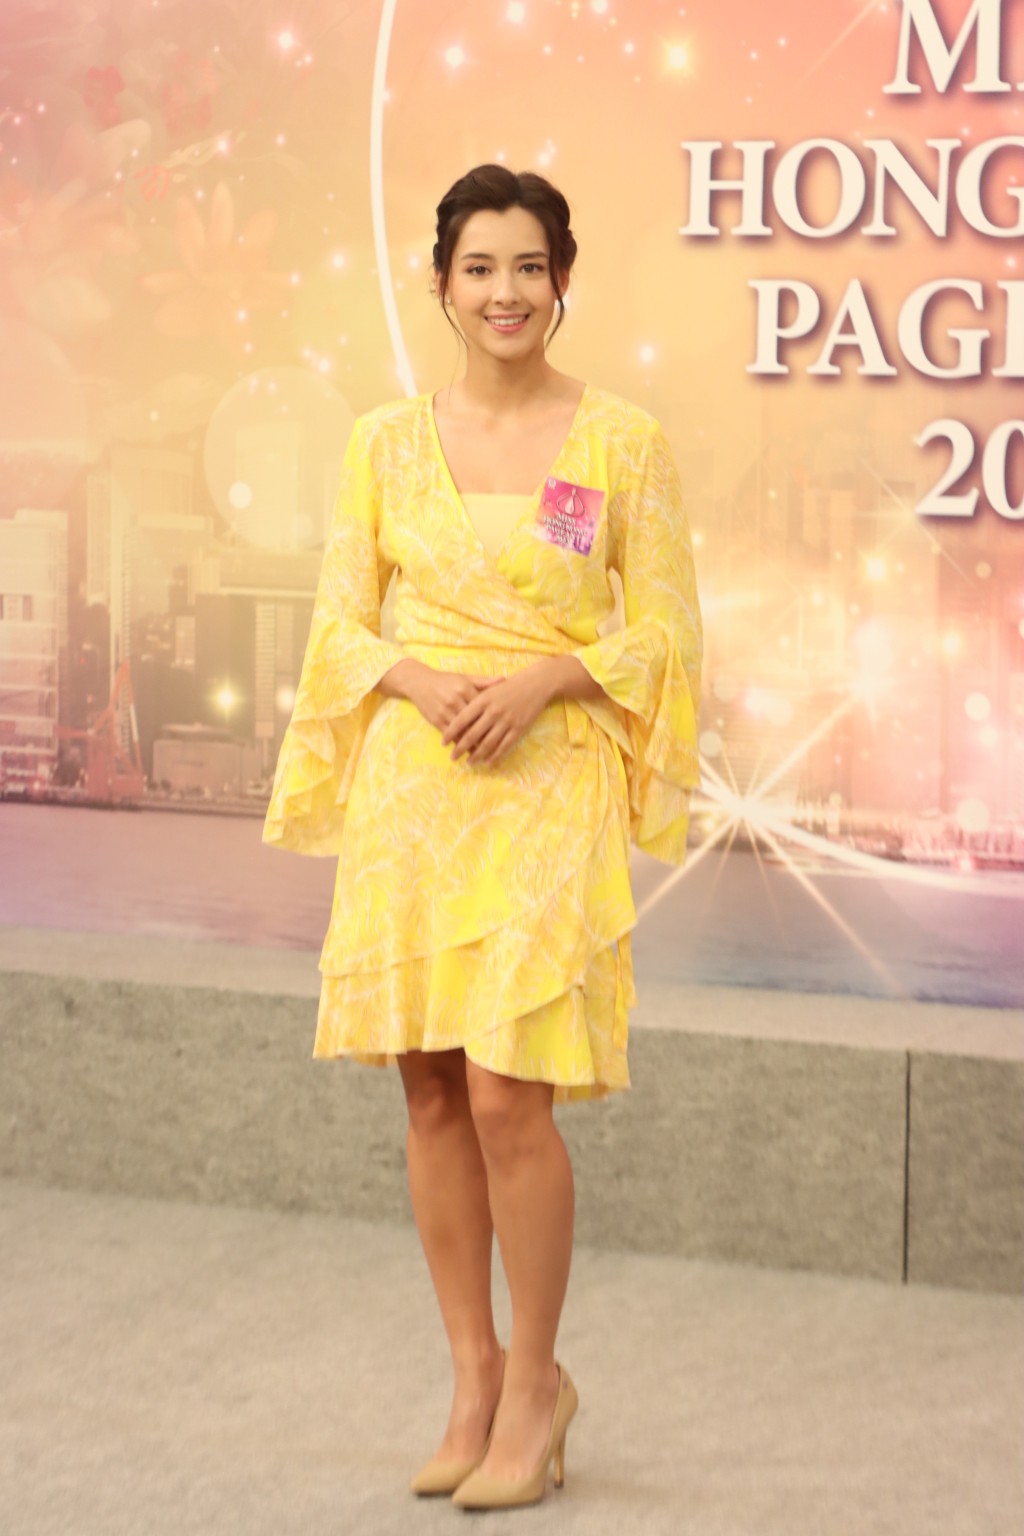 謝嘉怡是《2020年度香港小姐競選》冠軍暨最上鏡小姐。